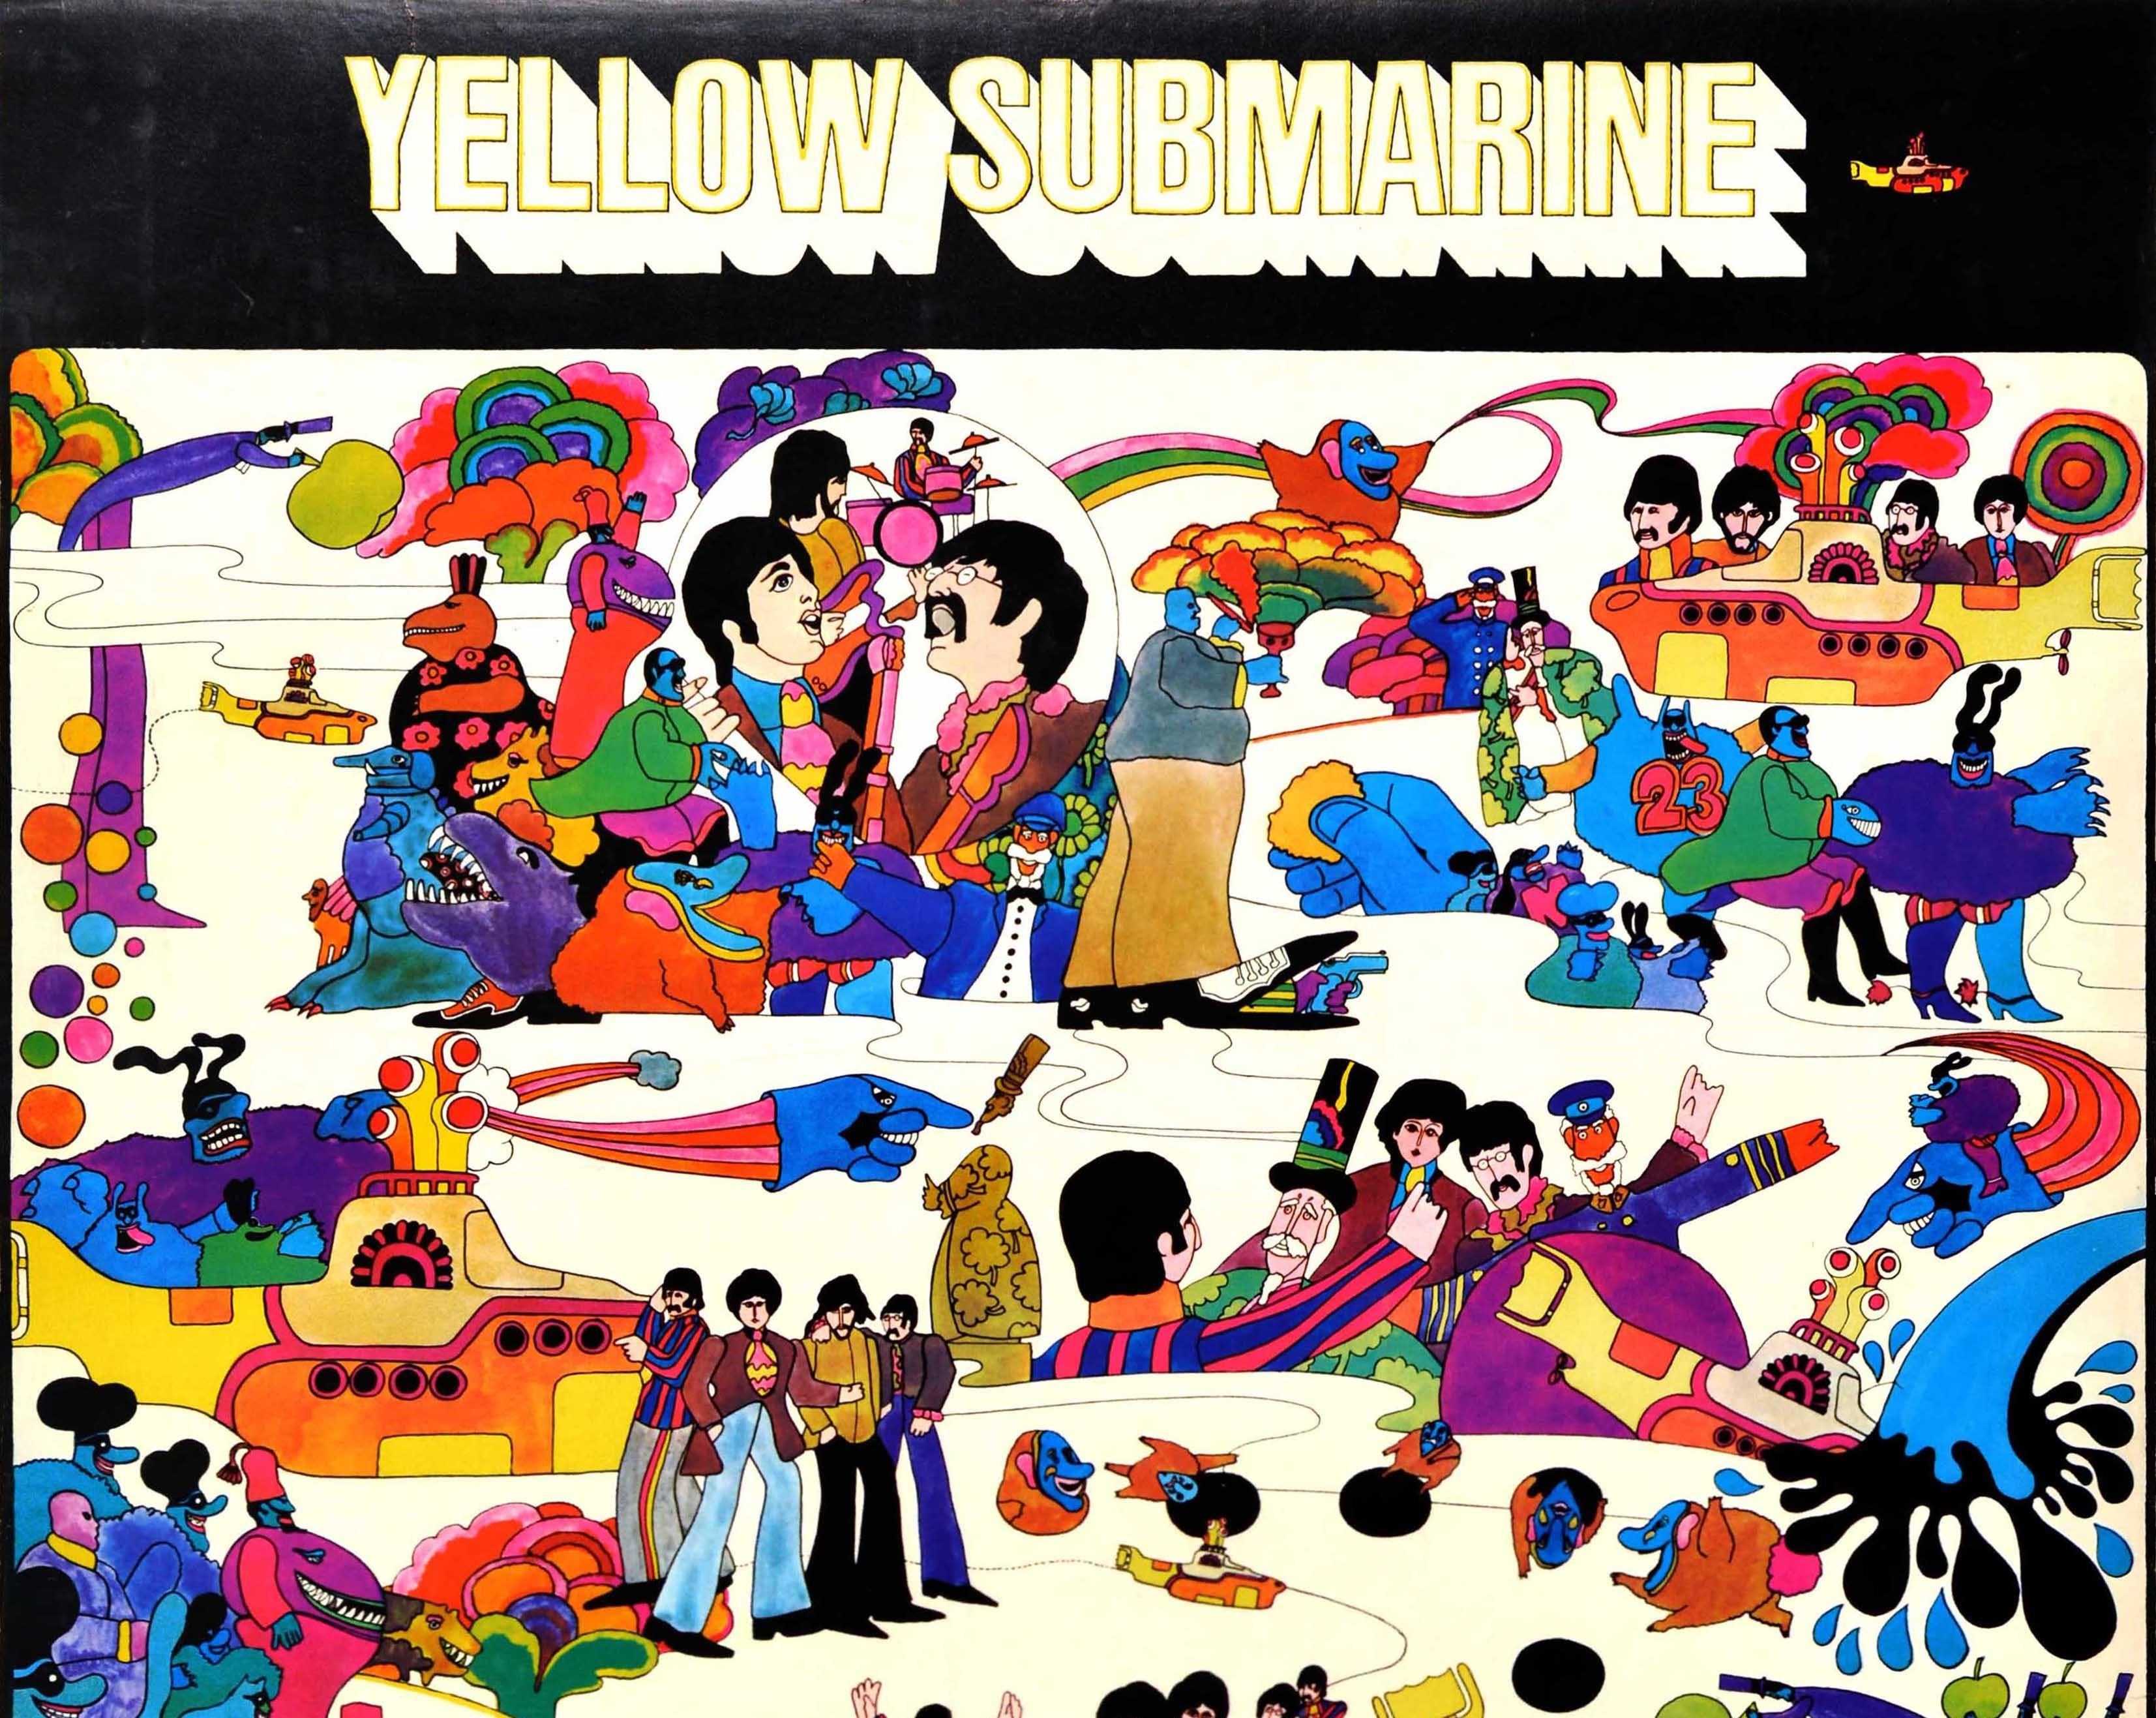 Original Vintage-Filmplakat, herausgegeben von Hallmark für den Animationsfilm Yellow Submarine mit der Sgt. Pepper's Lonely Hearts Club Band in der Hauptrolle, der auf einem Lied von John Lennon und Paul McCartney basiert und die Musik der Beatles